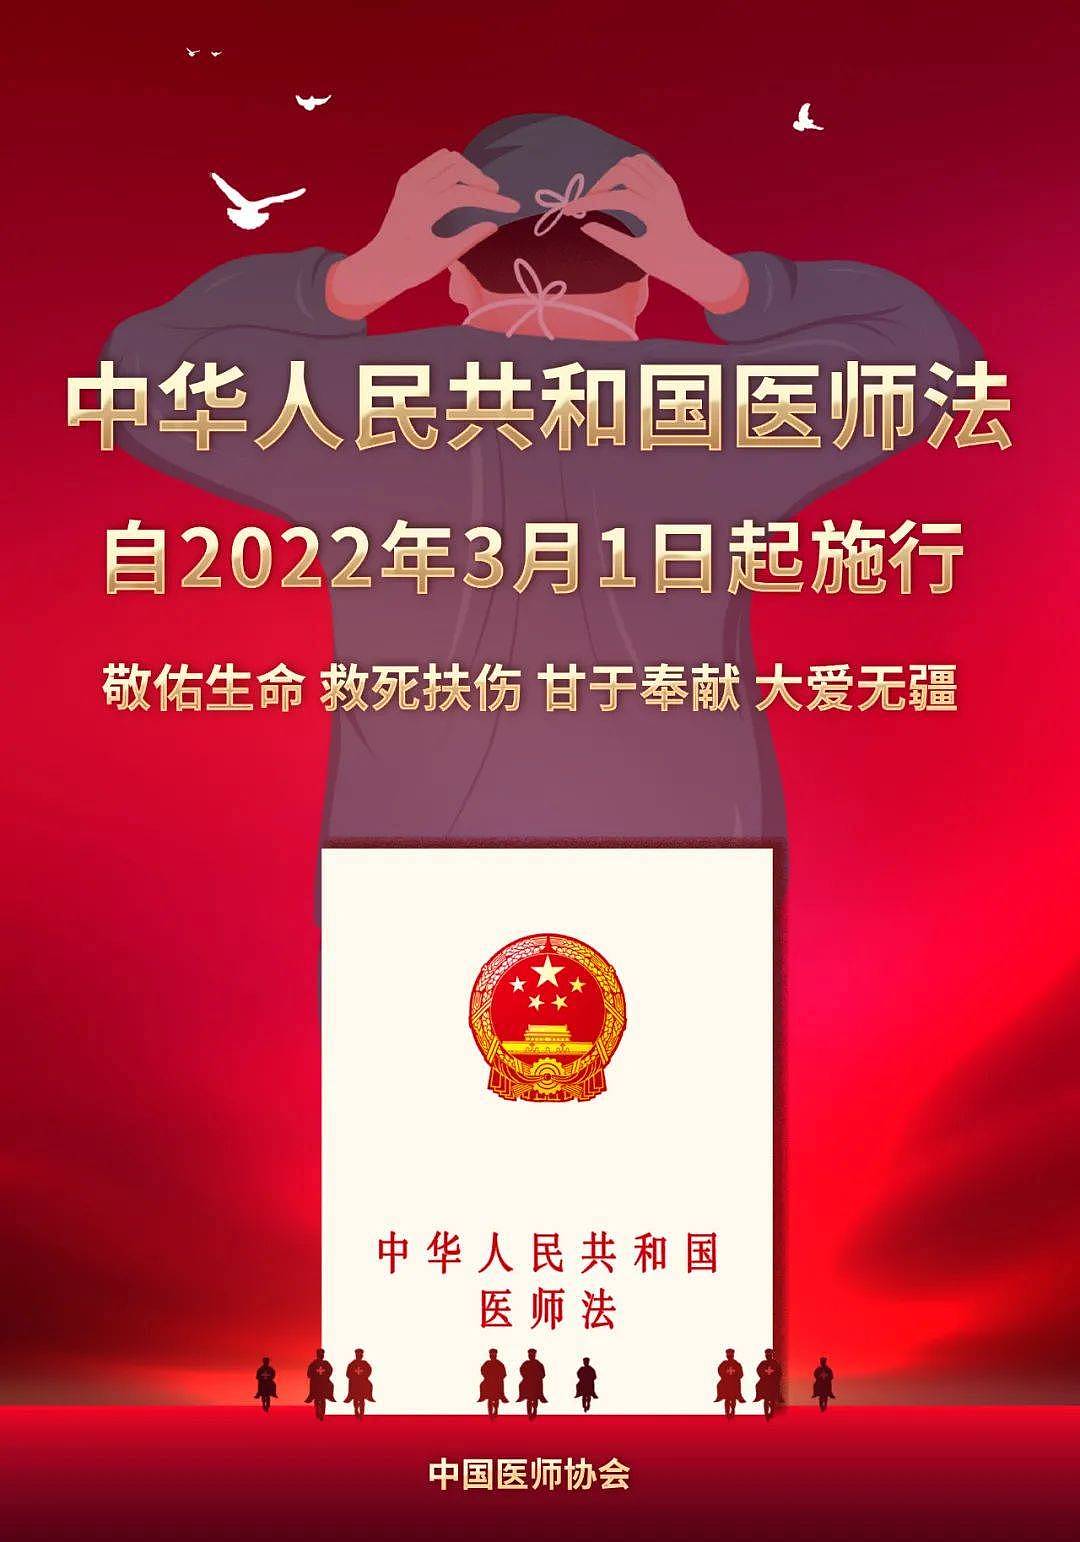 搜狐医药 | 中国医师协会发布《中华人民共和国医师法》宣传画 - 2